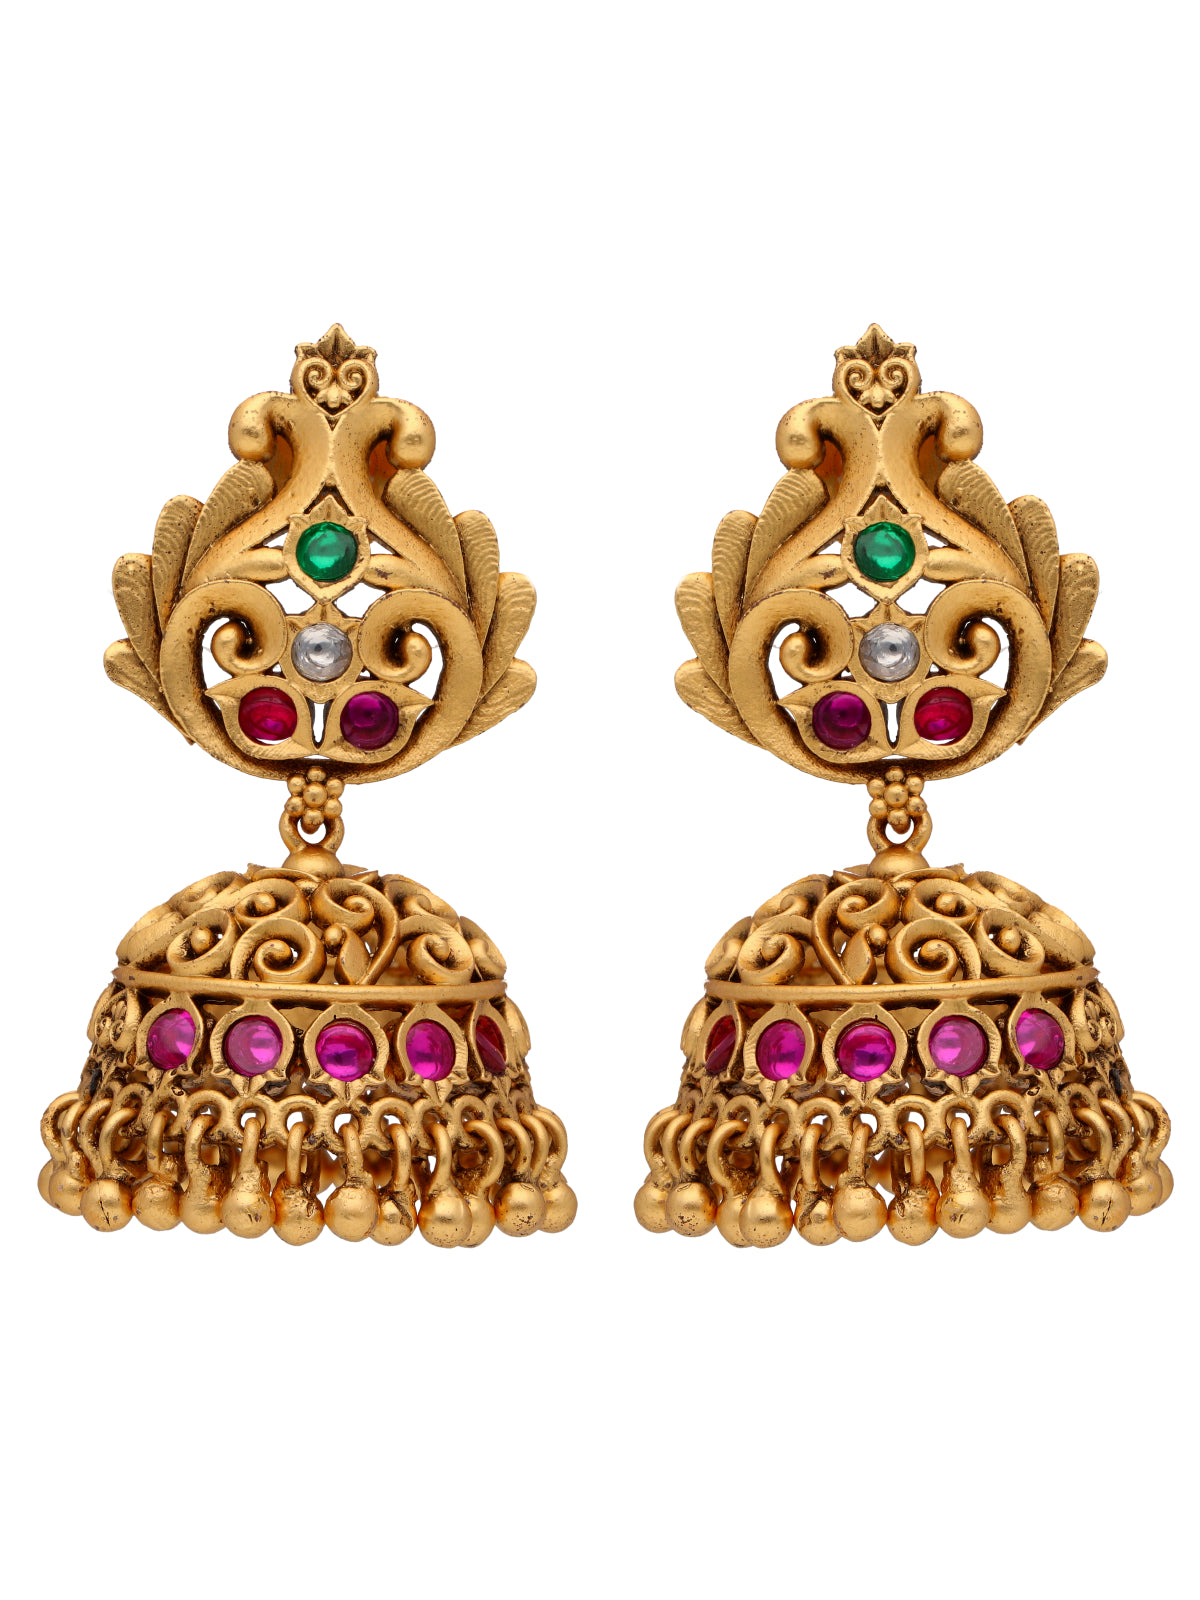 22K Gold Plated Intricate Laxmi Goddess Necklace Set 